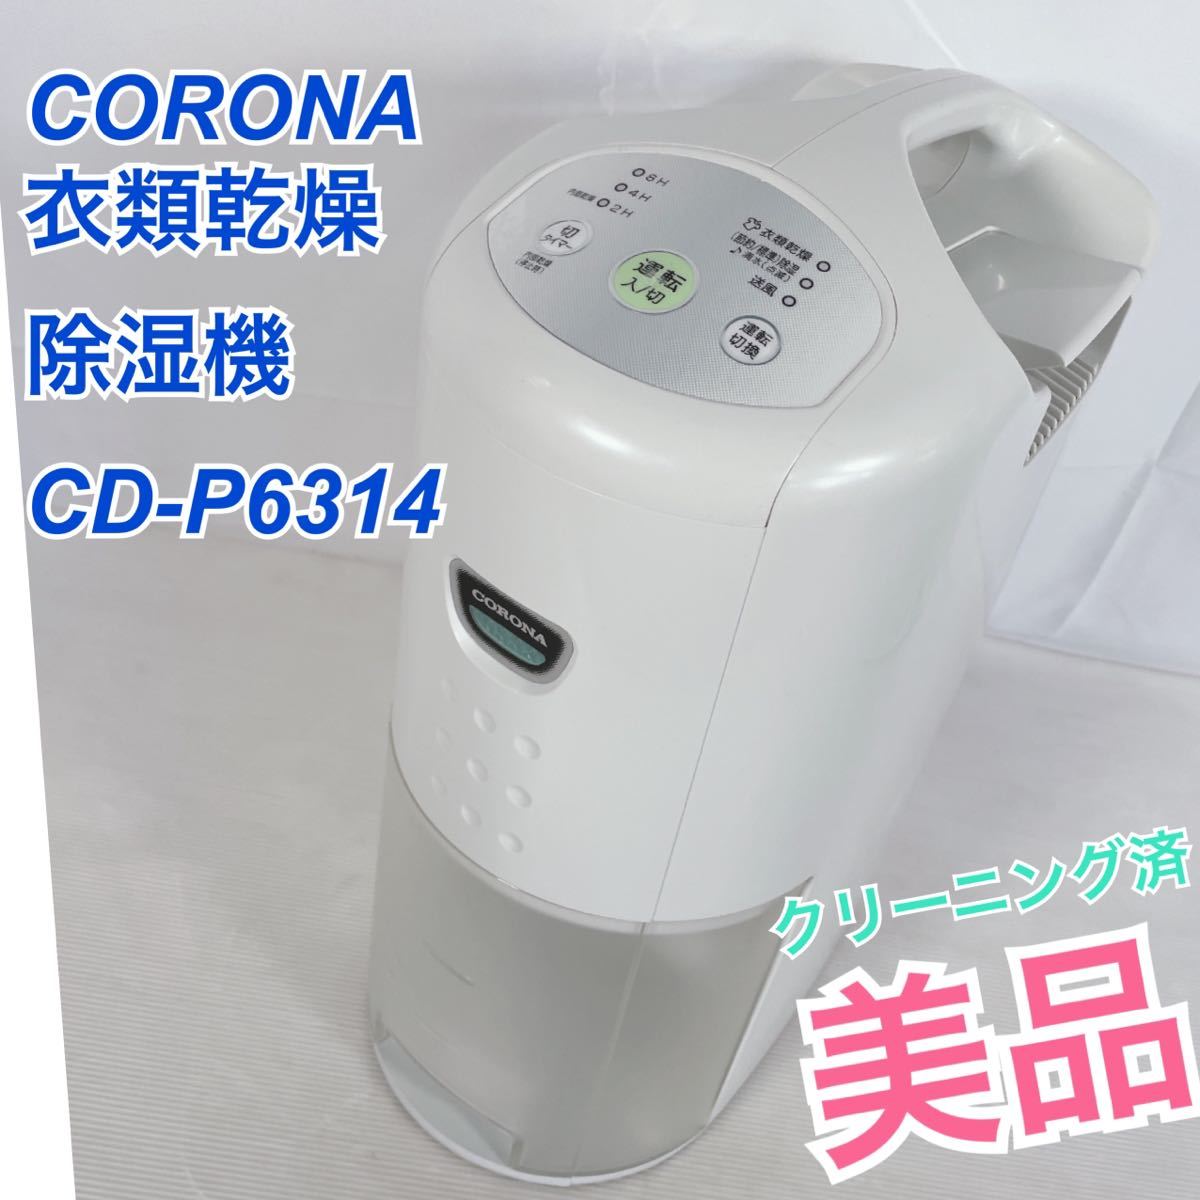 美品CORONA 衣類乾燥除湿機 コロナ 衣類乾燥 除湿器 CD-P6314